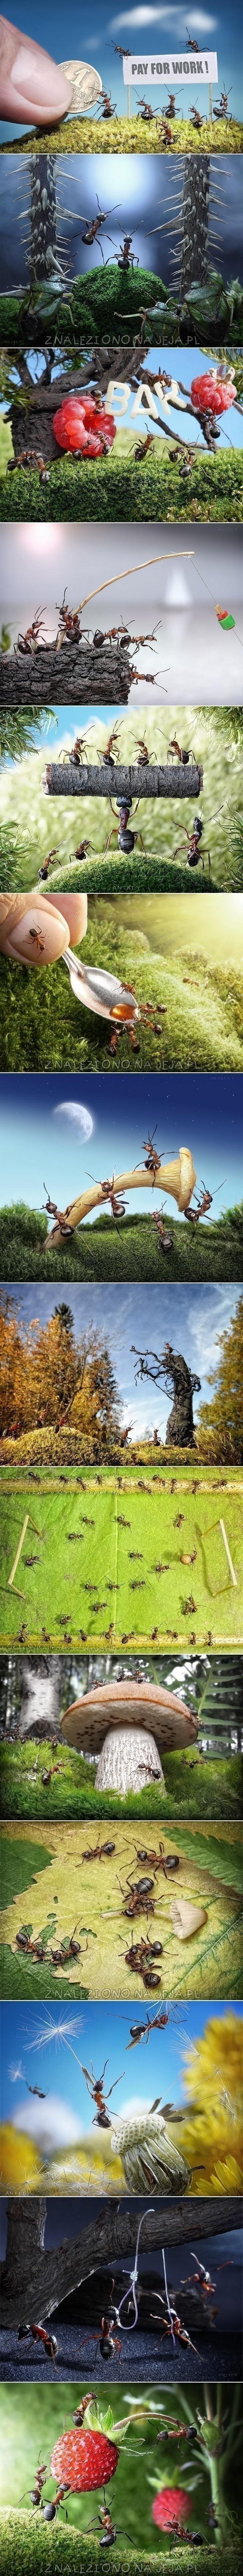 Dawno temu w trawie: Życie mrówek